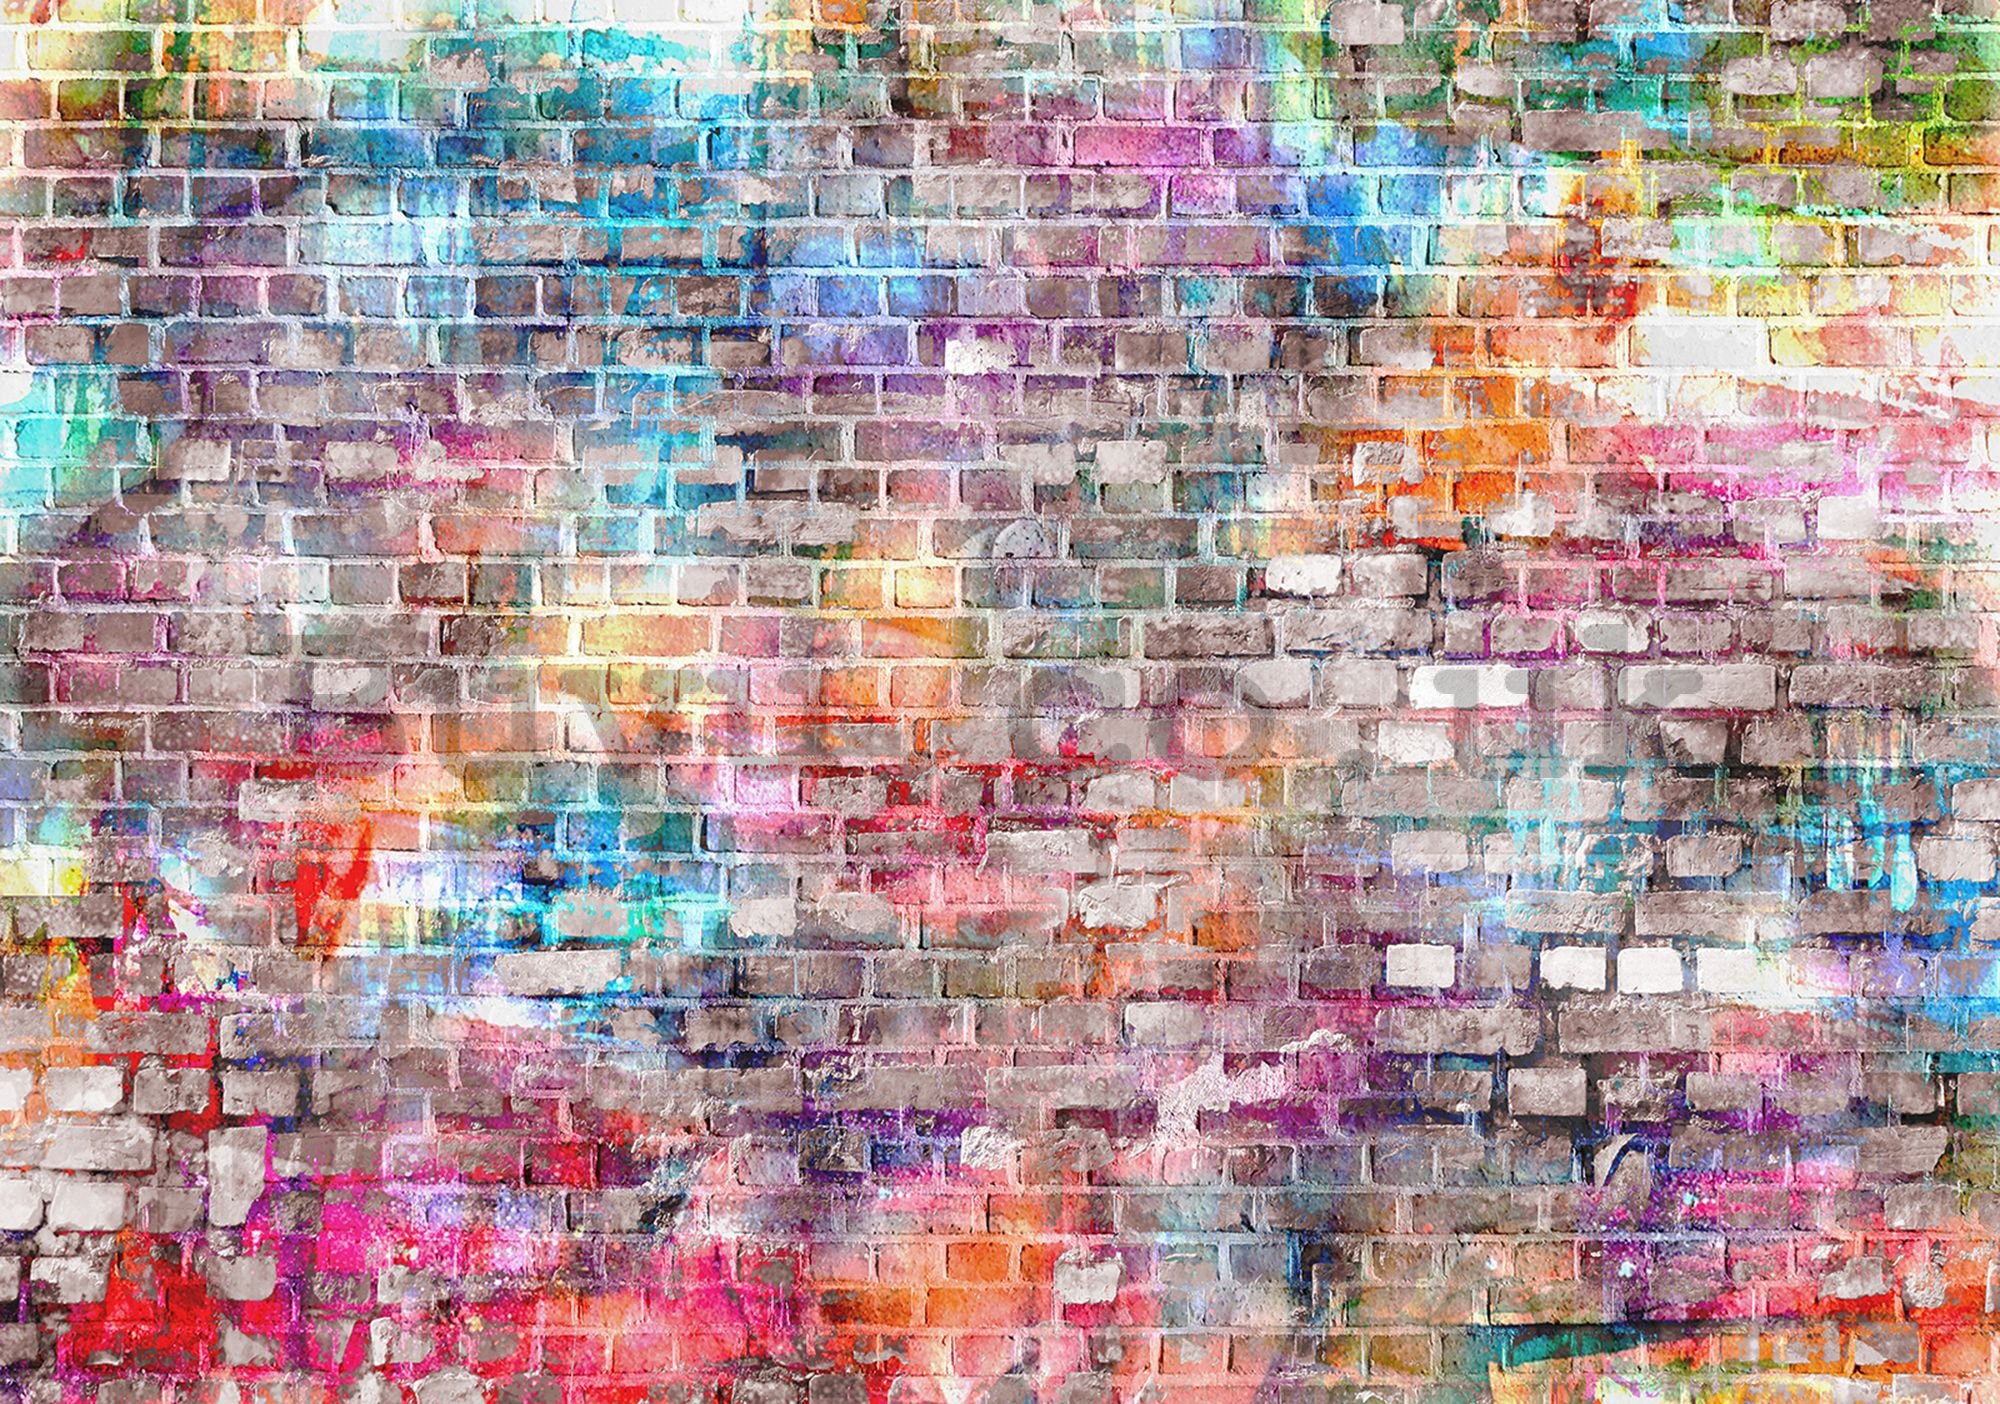 Wall mural: Colourful wall (2) - 184x254 cm